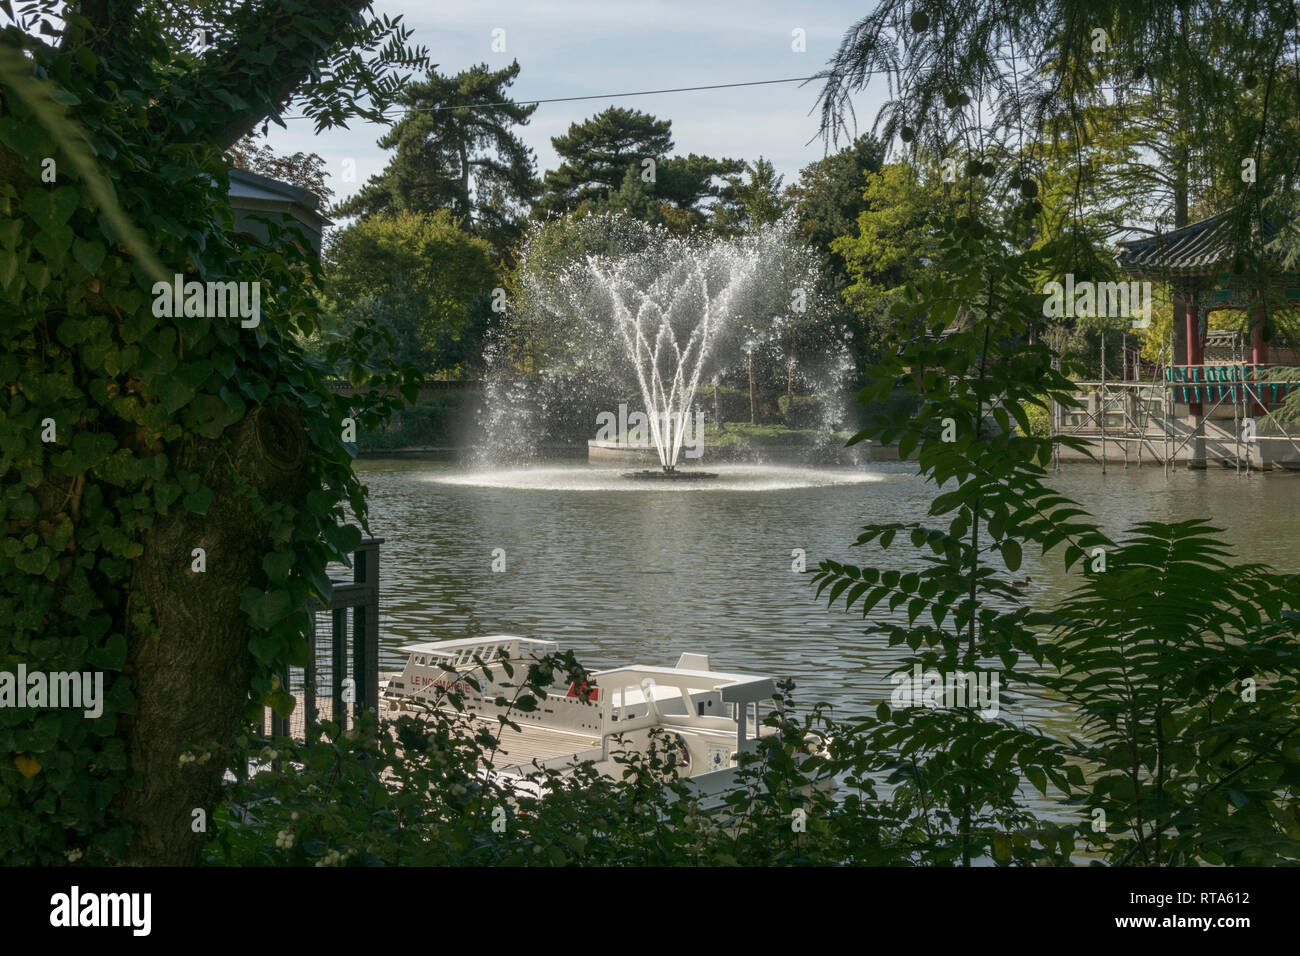 Jardin d'Acclimatation vor Kurzem renoviert wurde dieses Pariser touristische Attraktion zu seiner ehemaligen Pracht wieder in Kraft zu setzen. Stockfoto